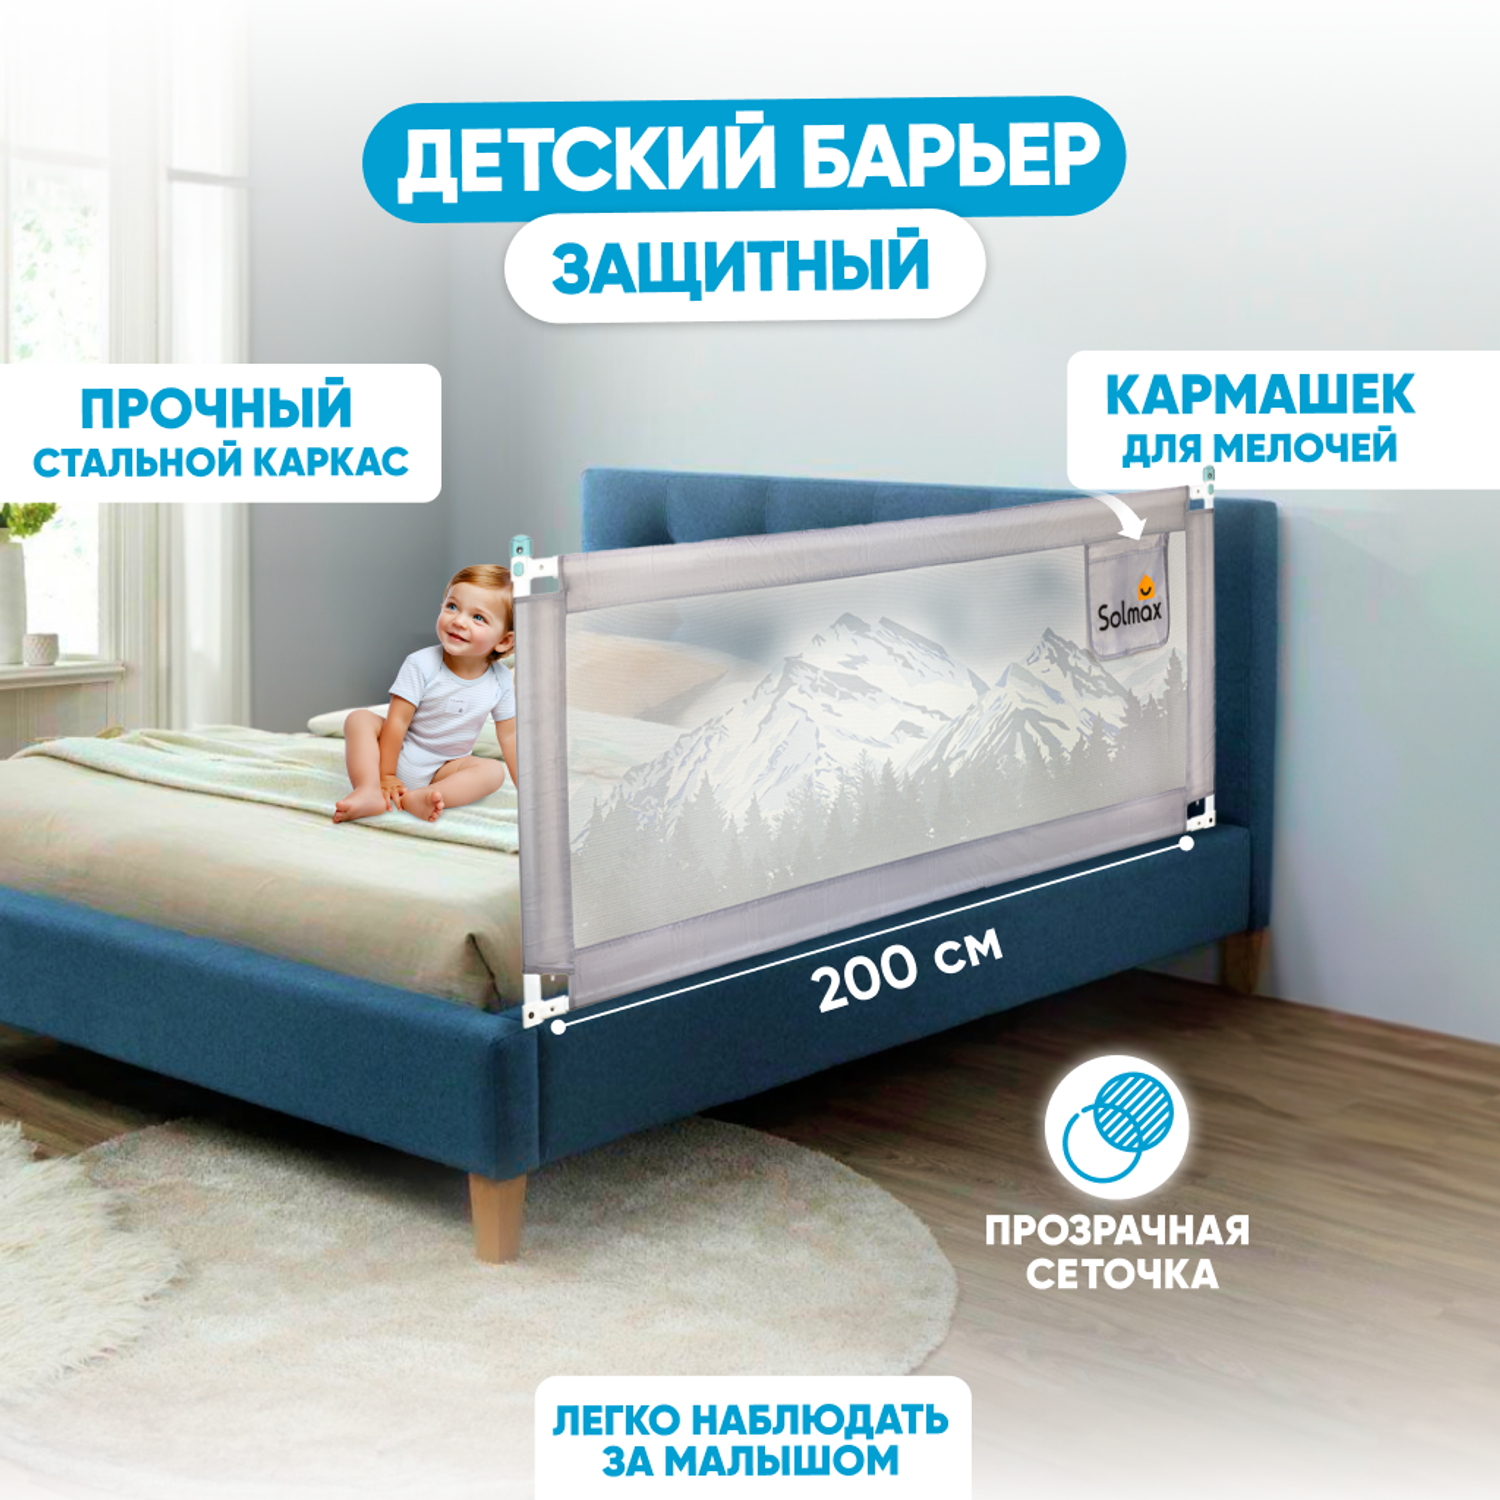 Защитный барьер для кровати Solmax ограничитель бортик для новорожденных 200 см серый - фото 1